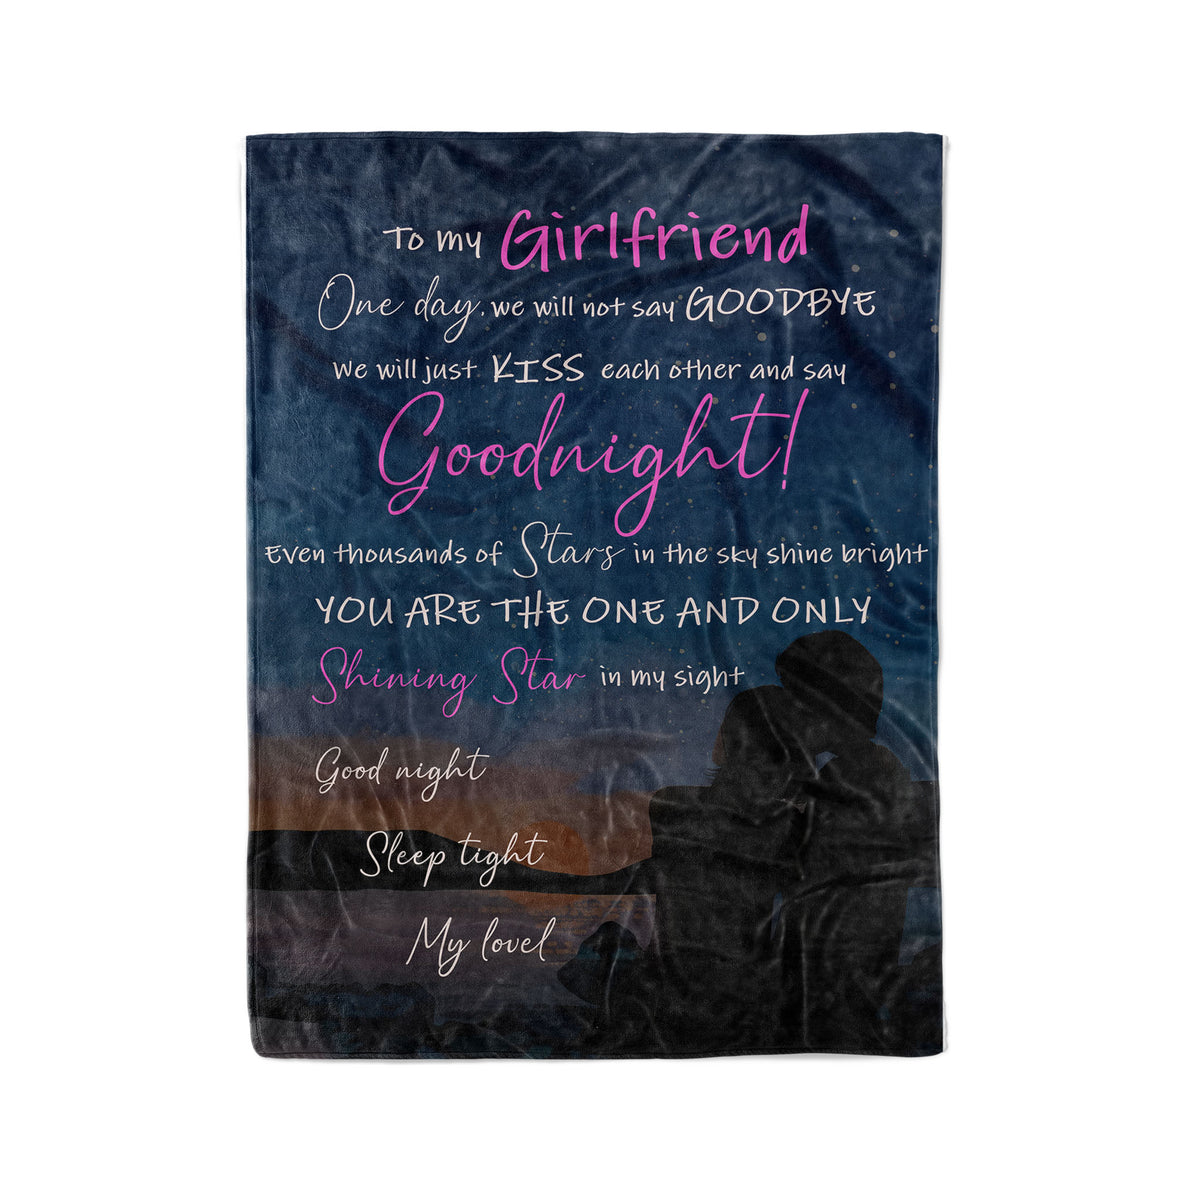 Personalized To My Girlfriend Blanket From Boyfriend - Fleece Blanket